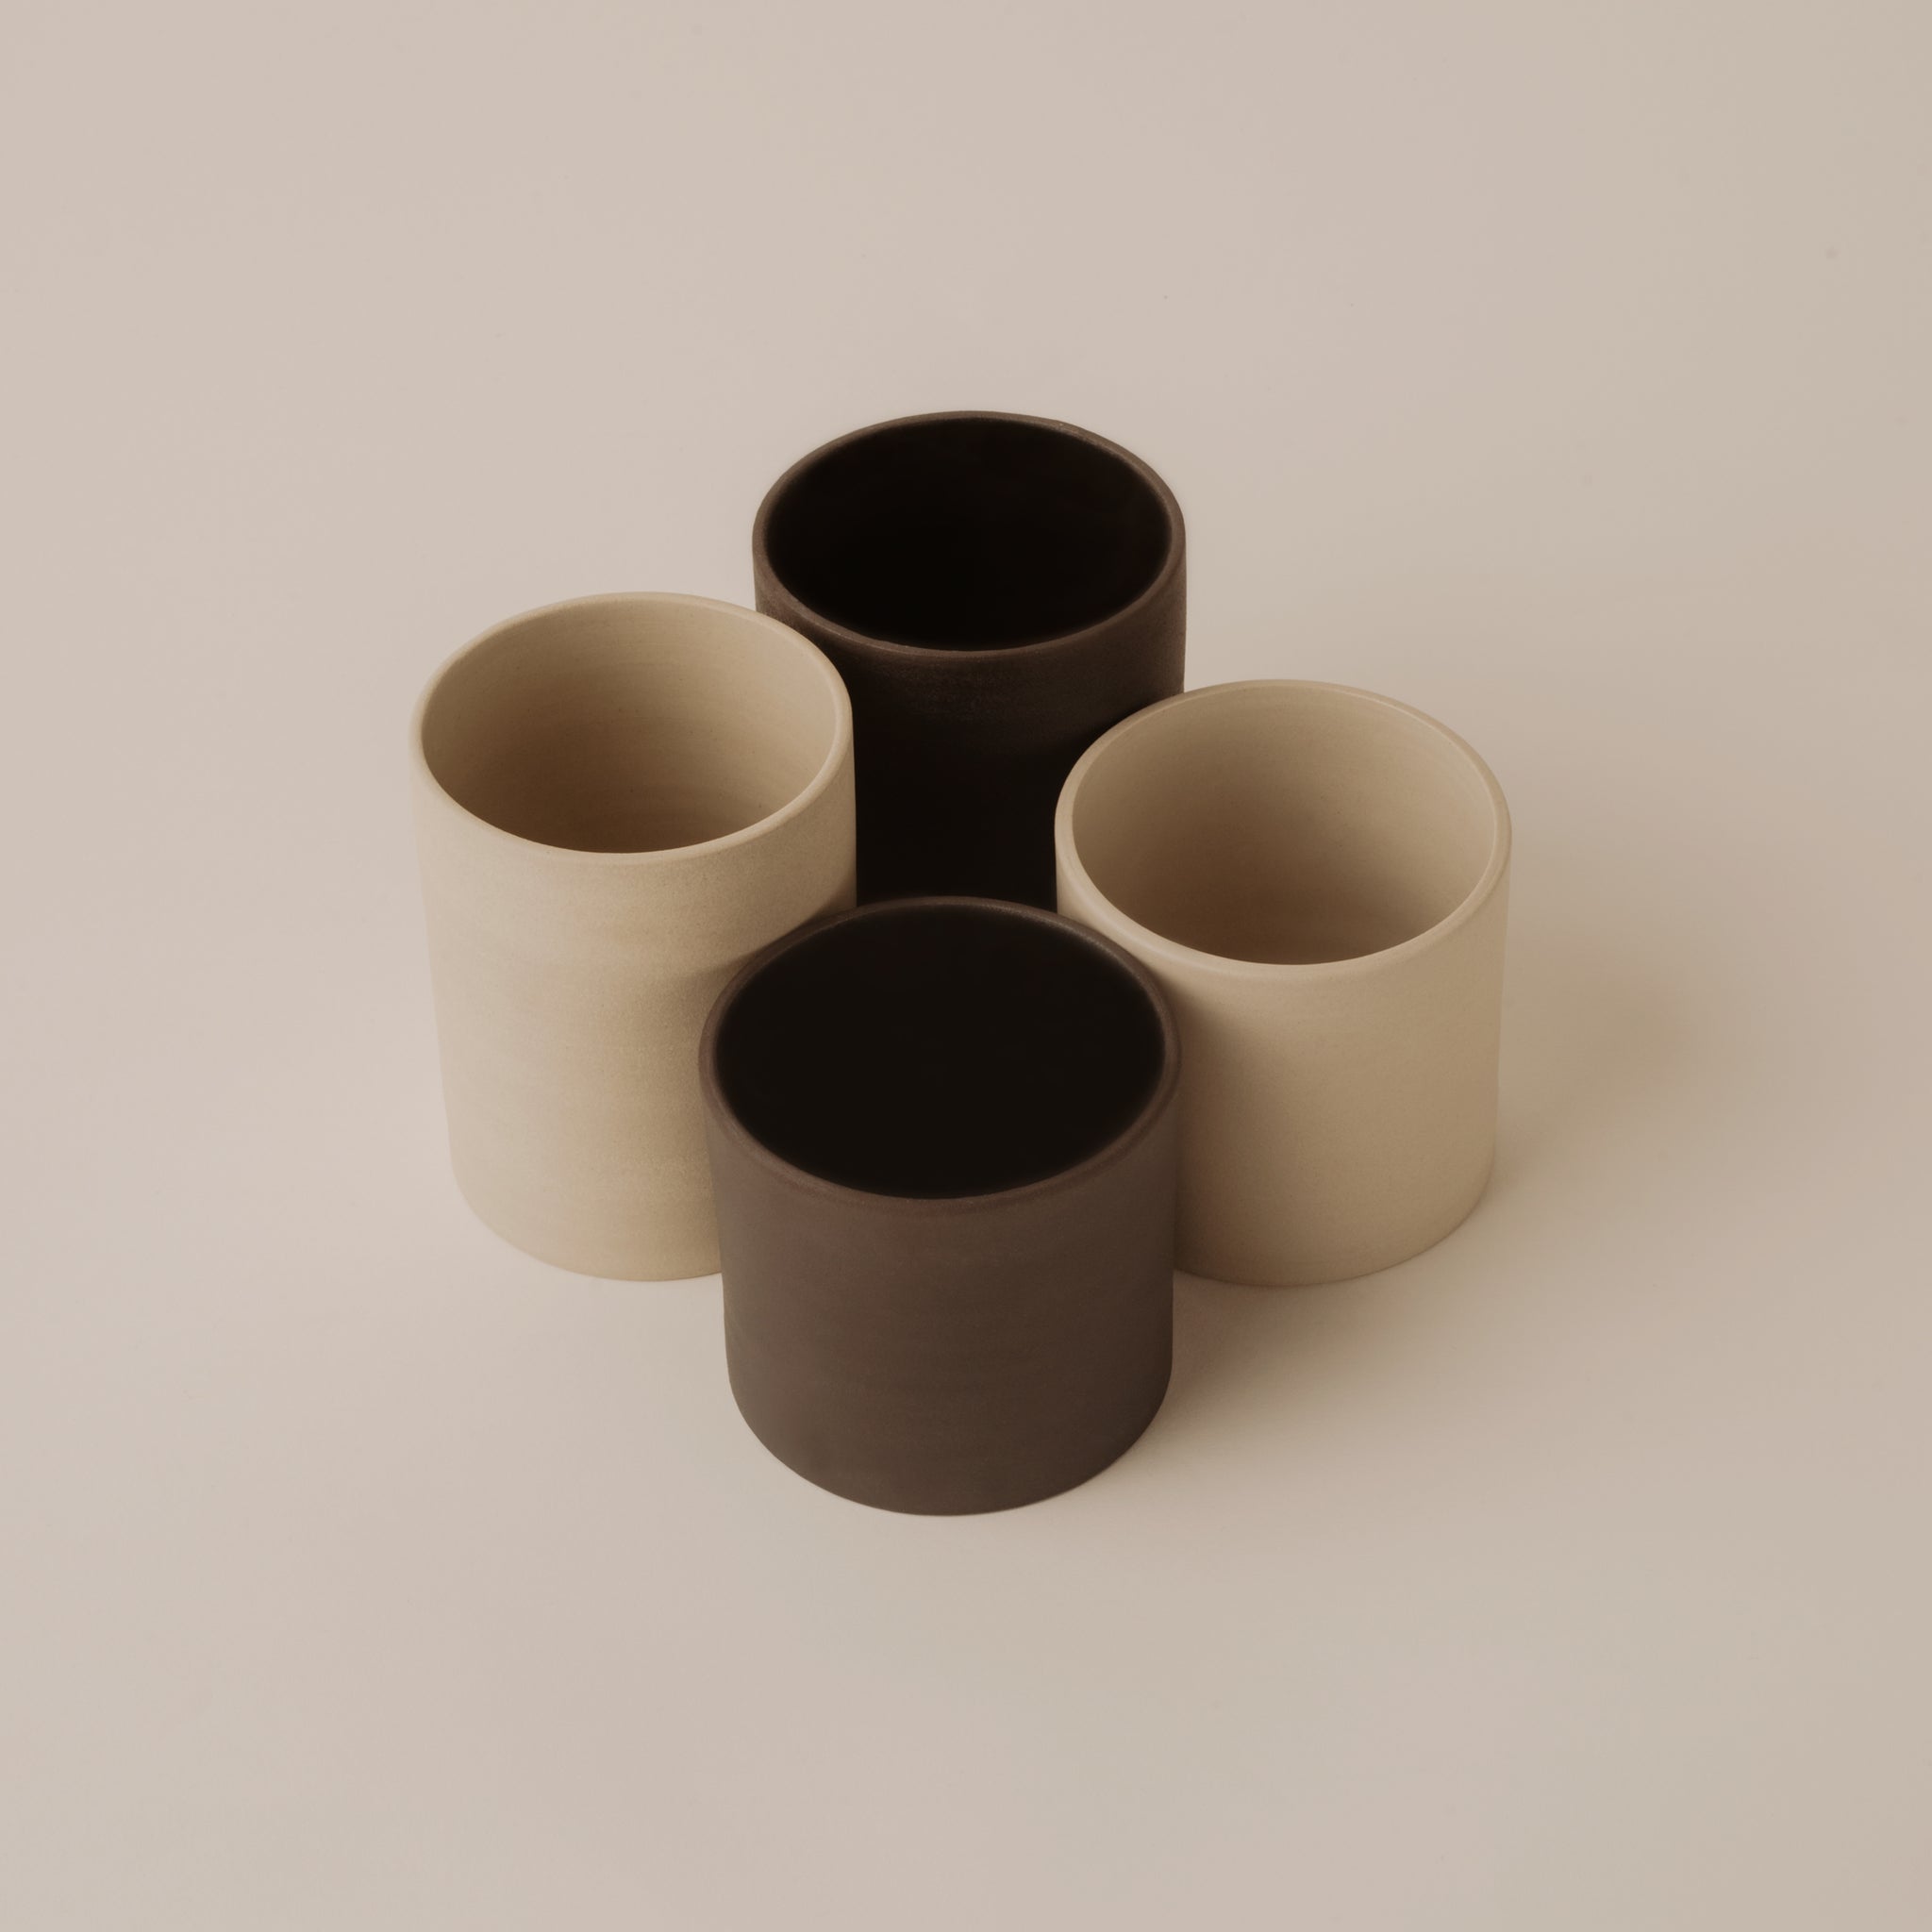 handgemachte Keramik aus Berlin Kaffee und Tee Becher clai studio ceramic atelier